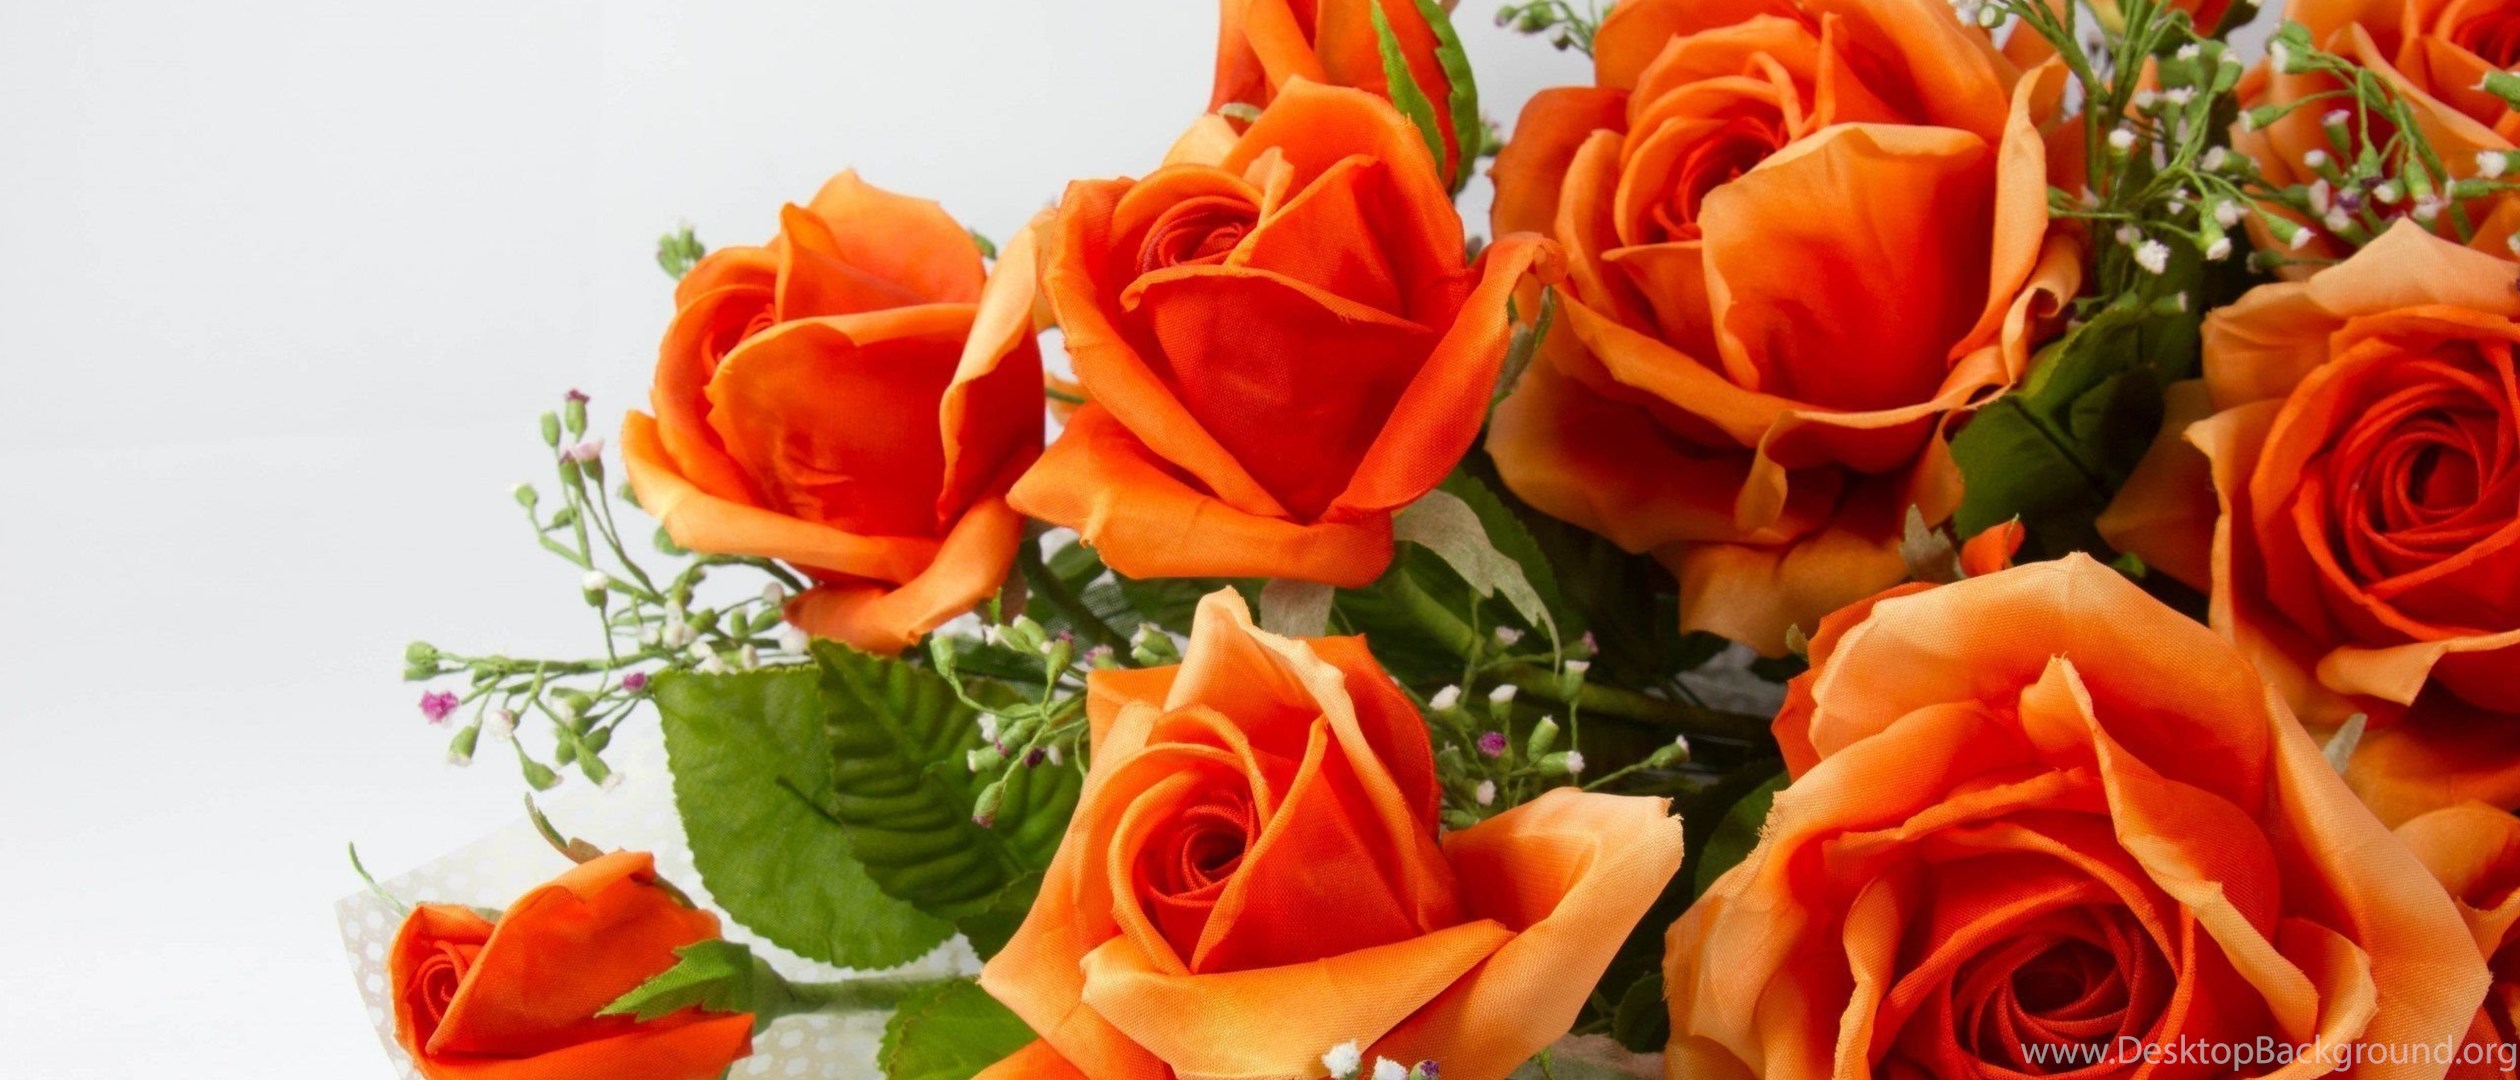 Как пишется очаровашка. Оранжевые розы. Красивые оранжевые розы. Прекрасной женщине цветы. Открытка самой обаятельной и привлекательной.